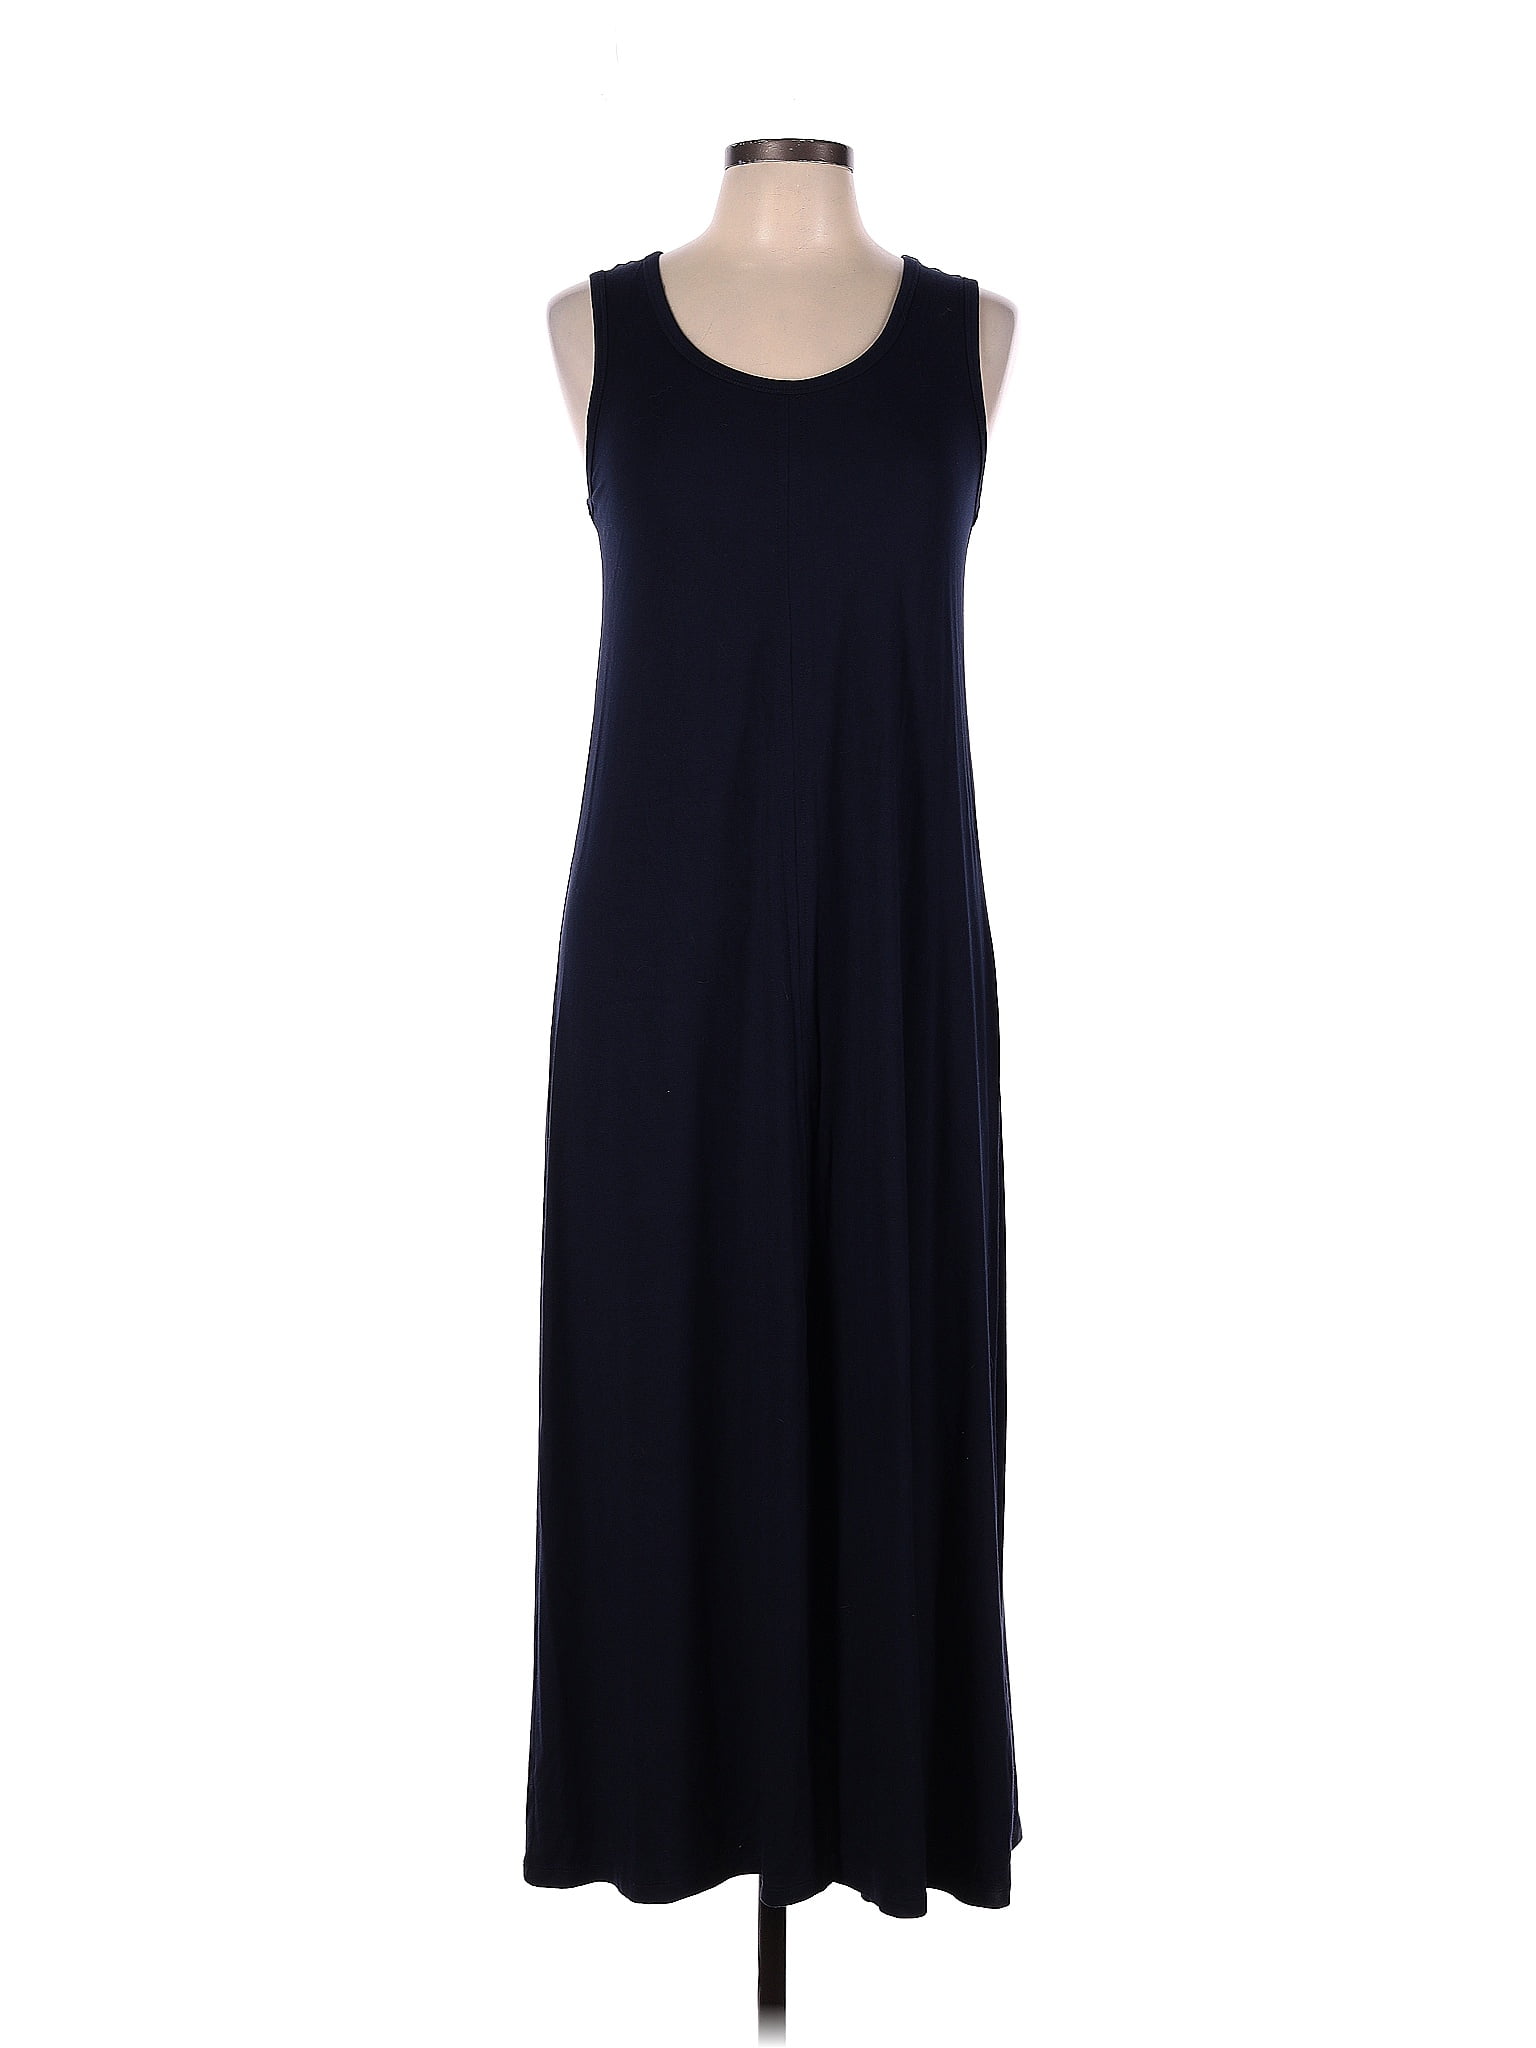 Karen Kane Solid Navy Blue Cocktail Dress Size L - 80% off | thredUP